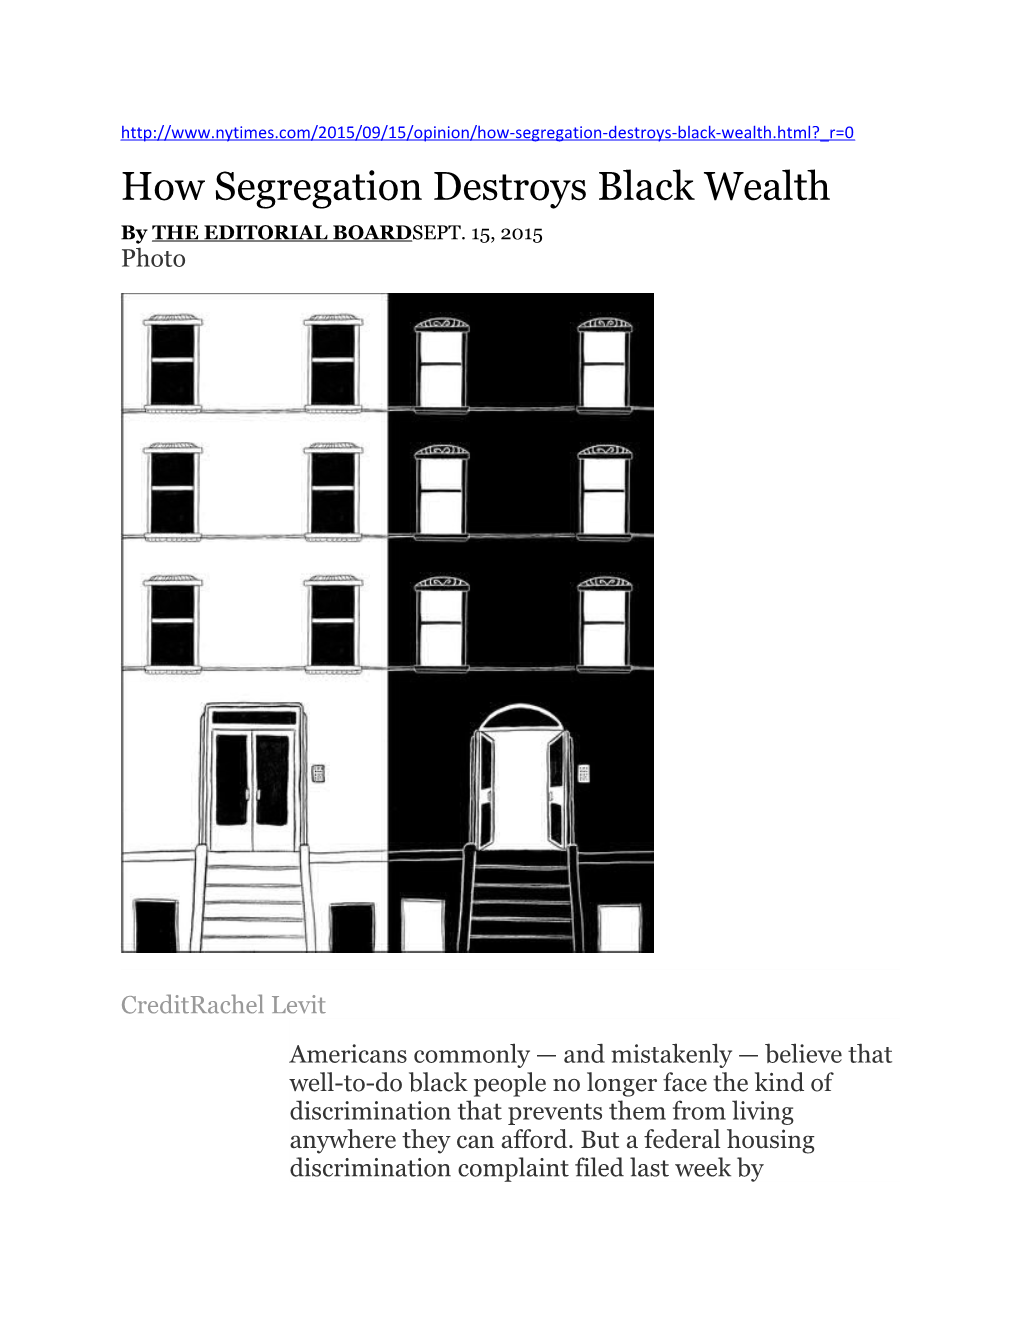 How Segregation Destroys Black Wealth